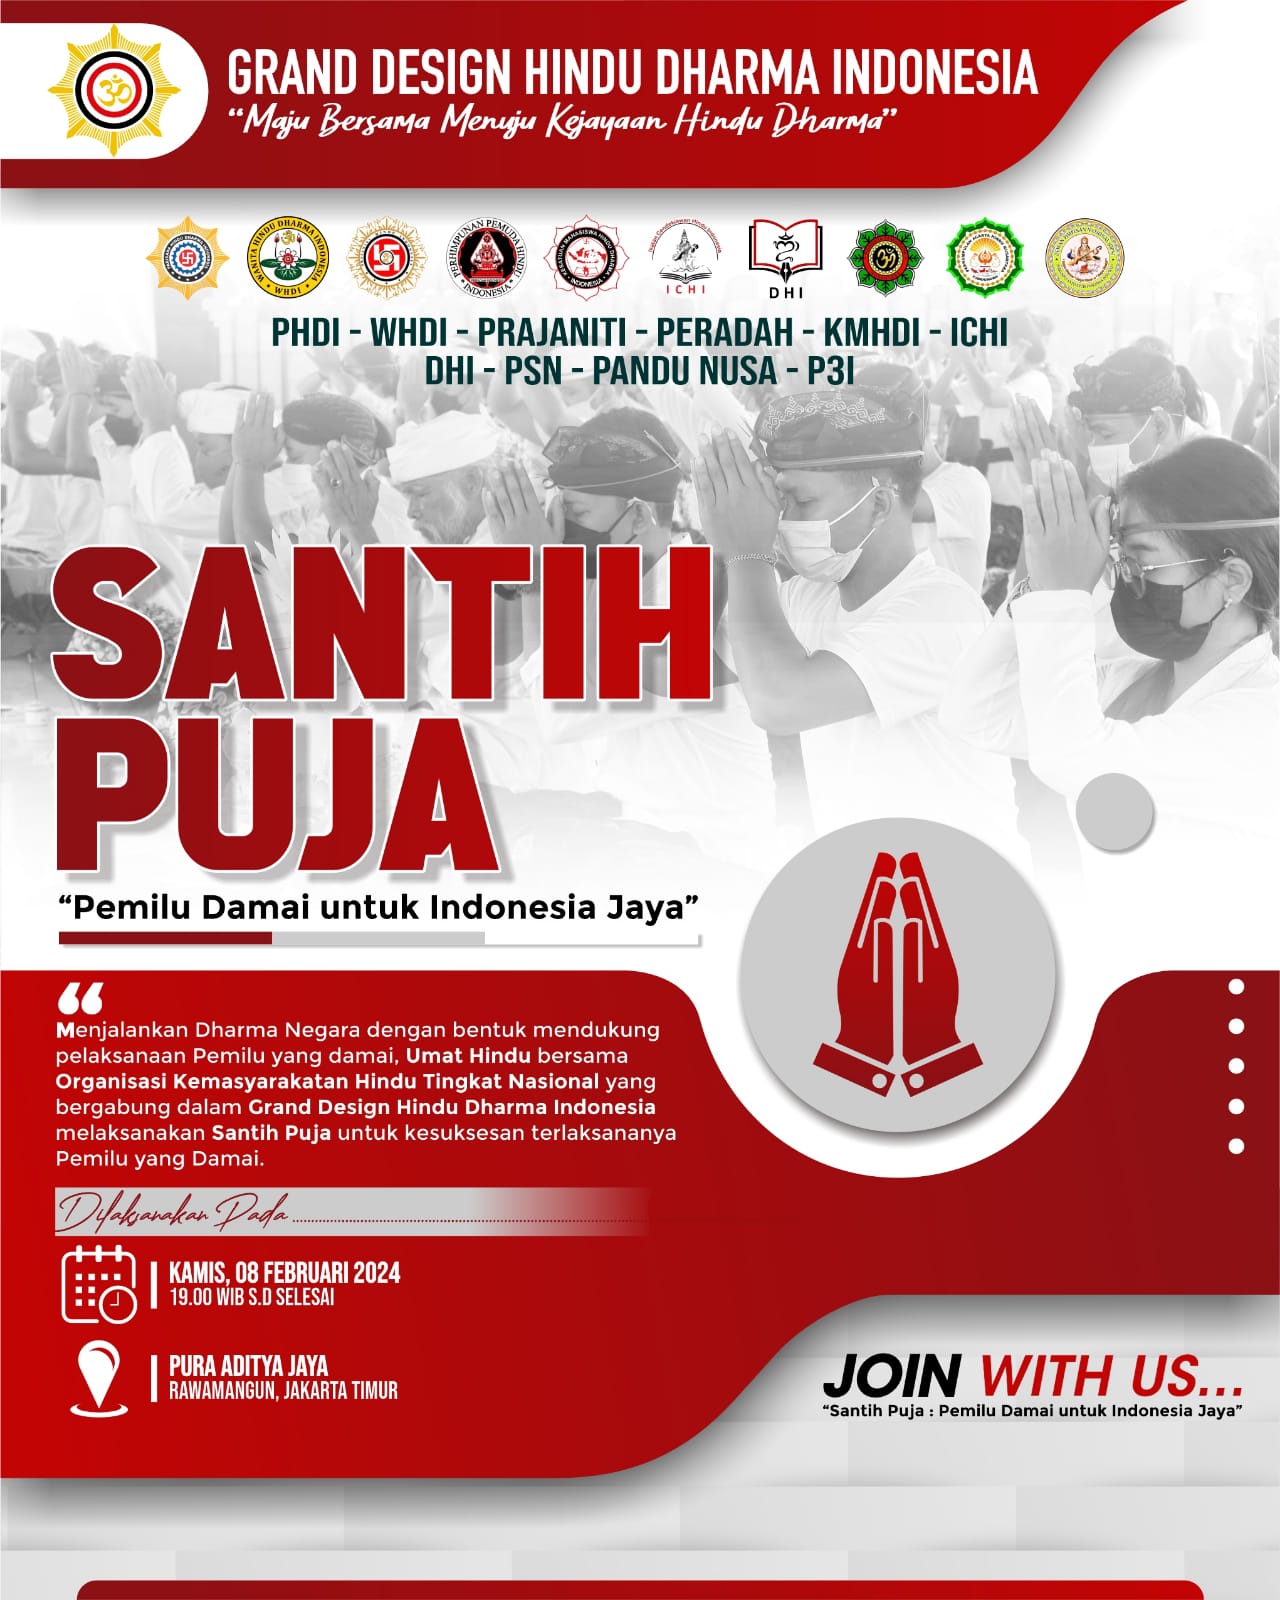 Parisada: Santih Puja Pemilu Damai dilaksanakan serentak di seluruh Indonesia. (08/02/2024) (F: Team Media PHDI Pusat, E: Idewa Adiyadnya/ Redaksi Suara Utama)